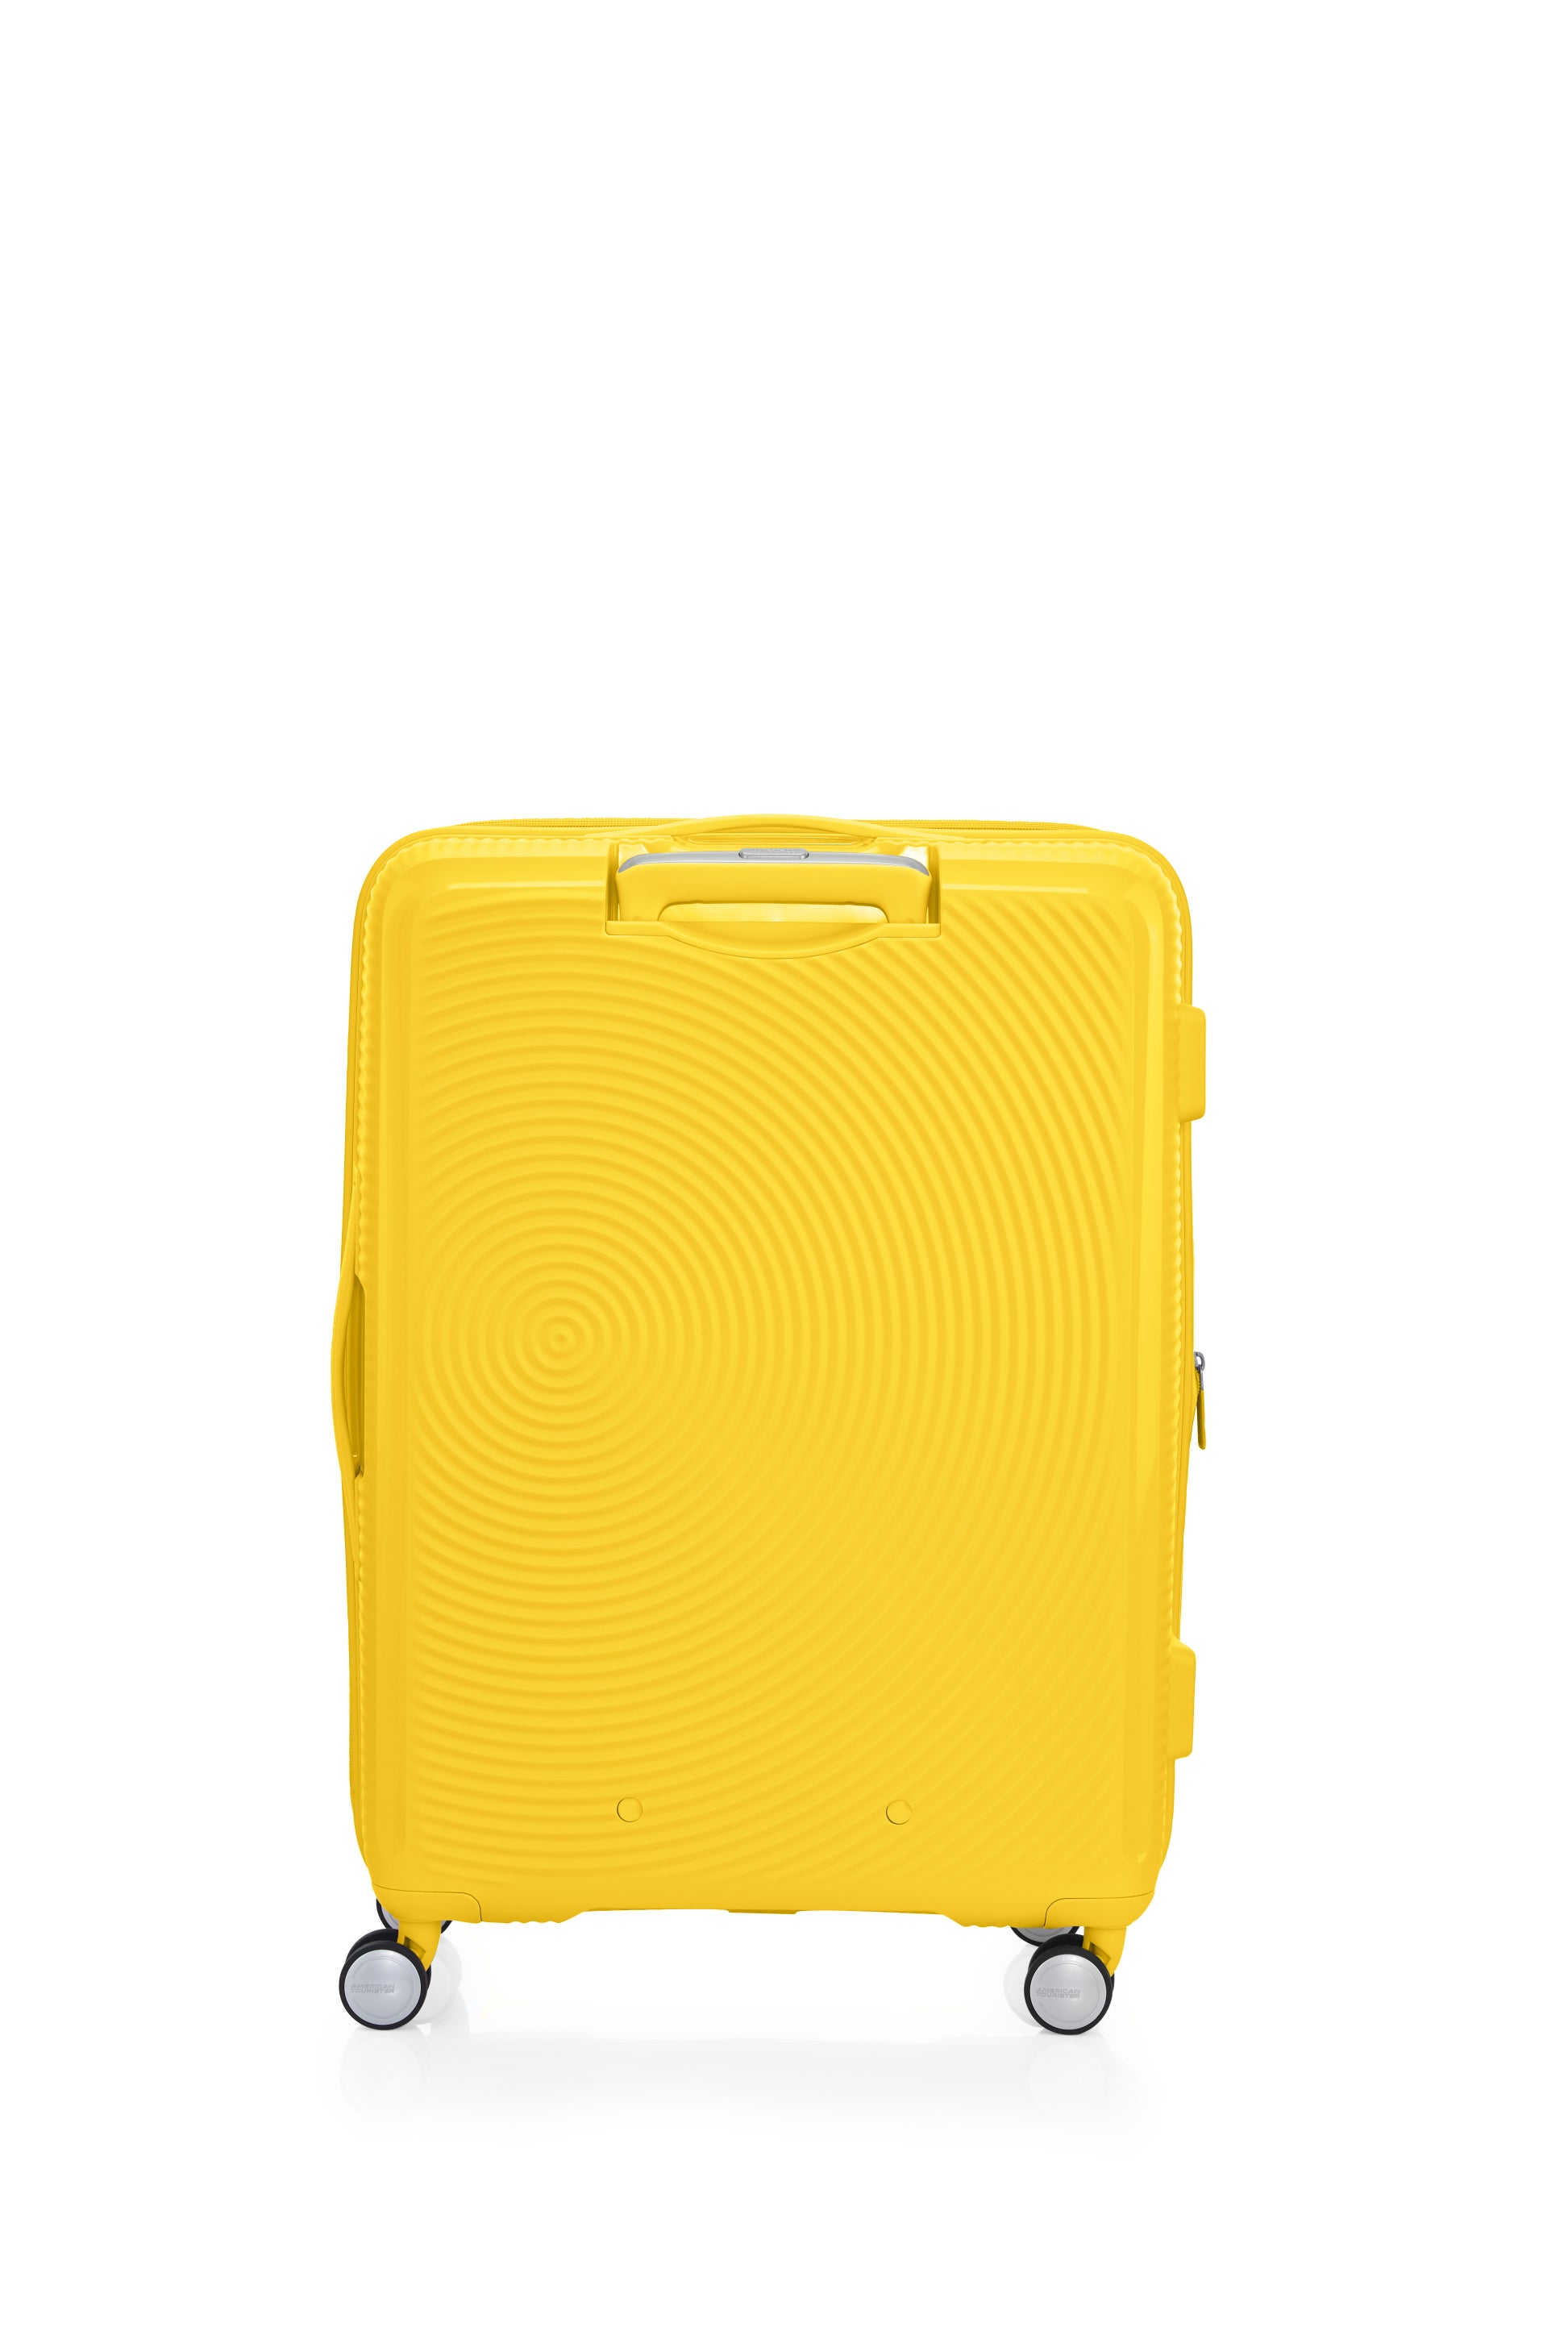 American Tourister - Curio 2.0 69cm Medium Suitcase - Golden Yellow - 0